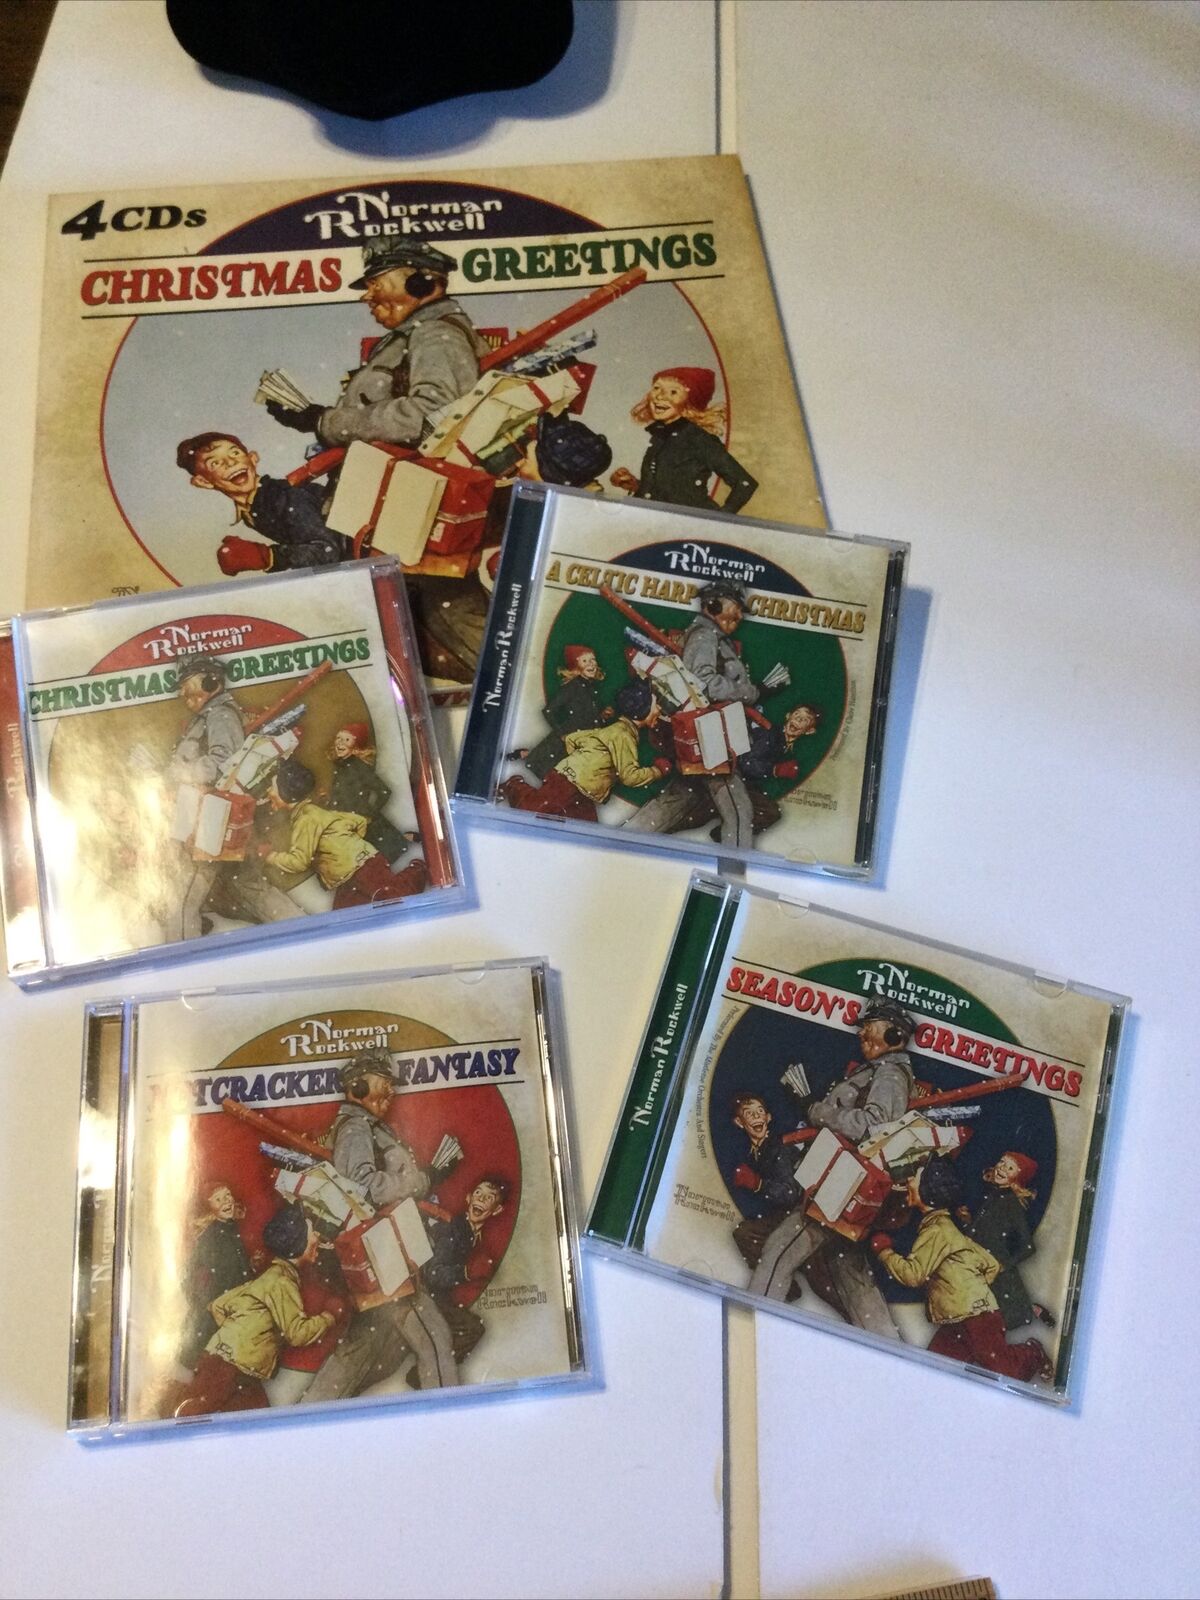 4 CD set Norman Rockwell Christmas Greetings, Christmas Songs